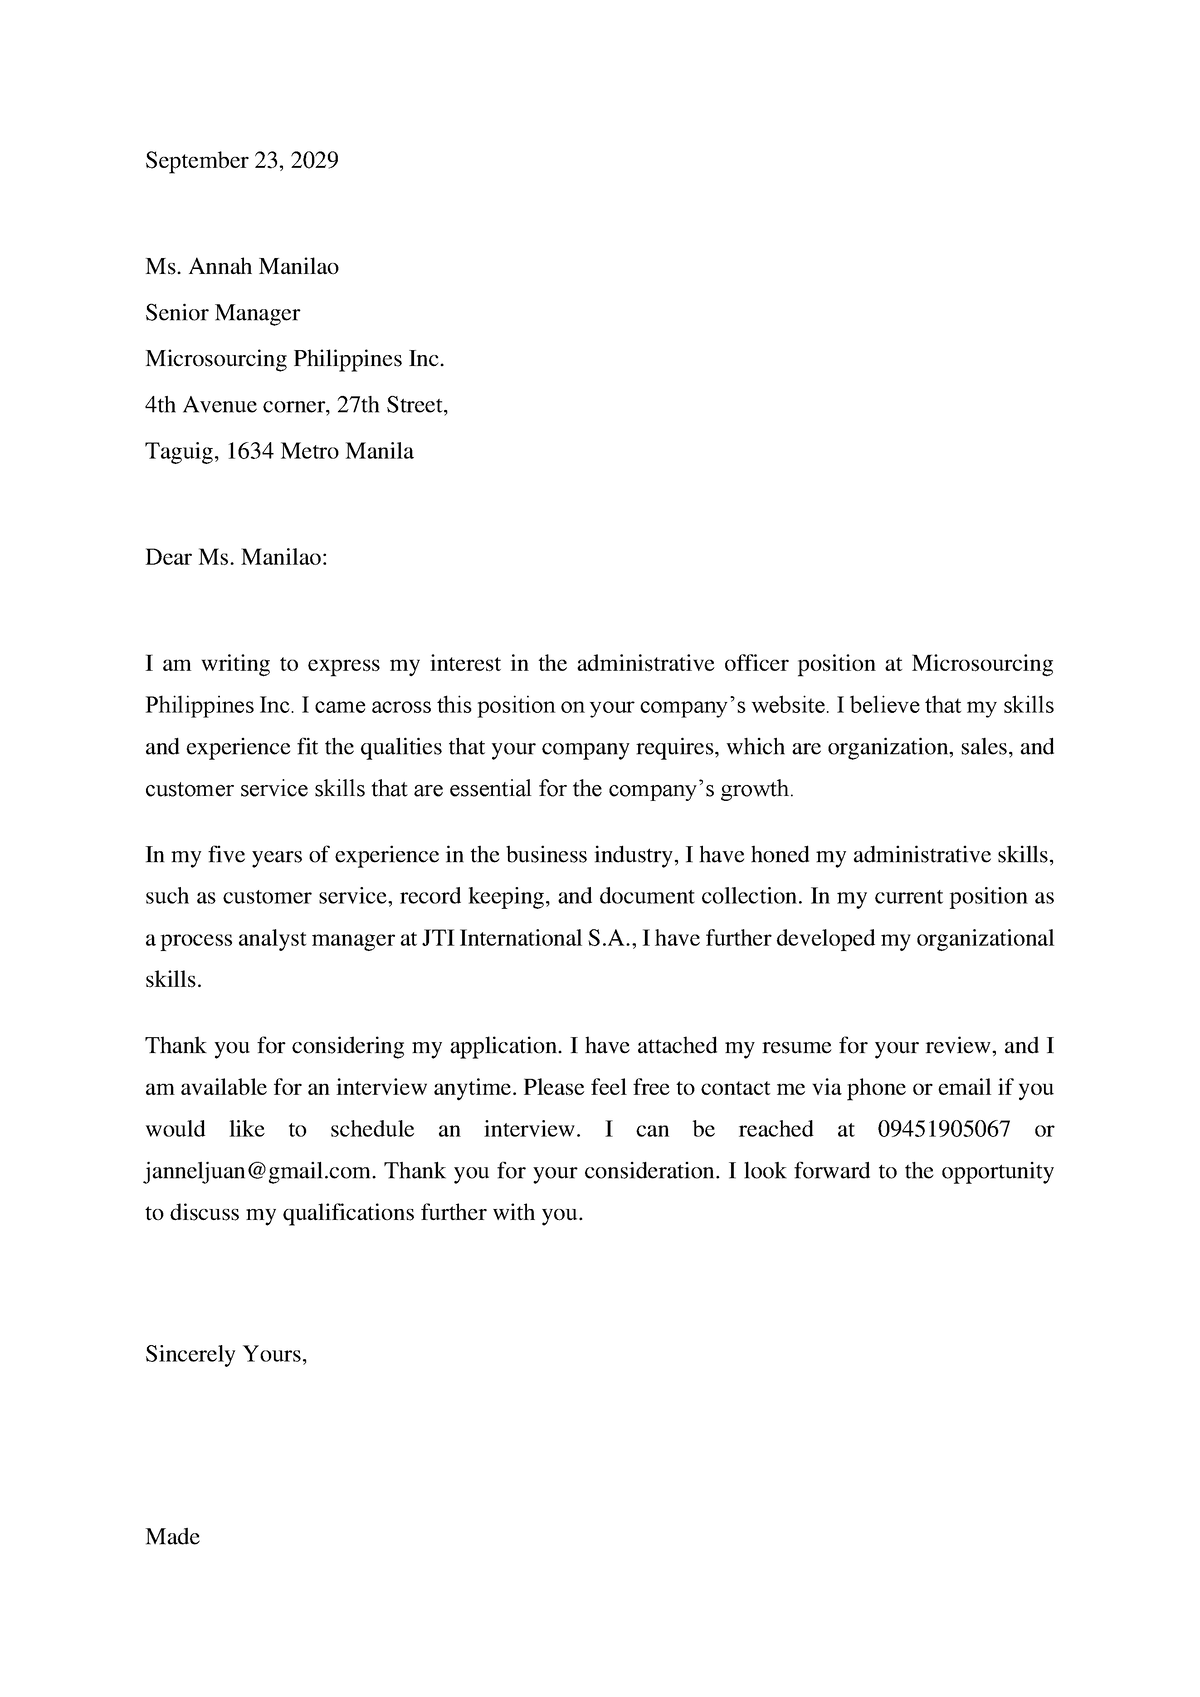 Application letter - September 2 3, 20 29 Ms. Annah Manilao Senior ...